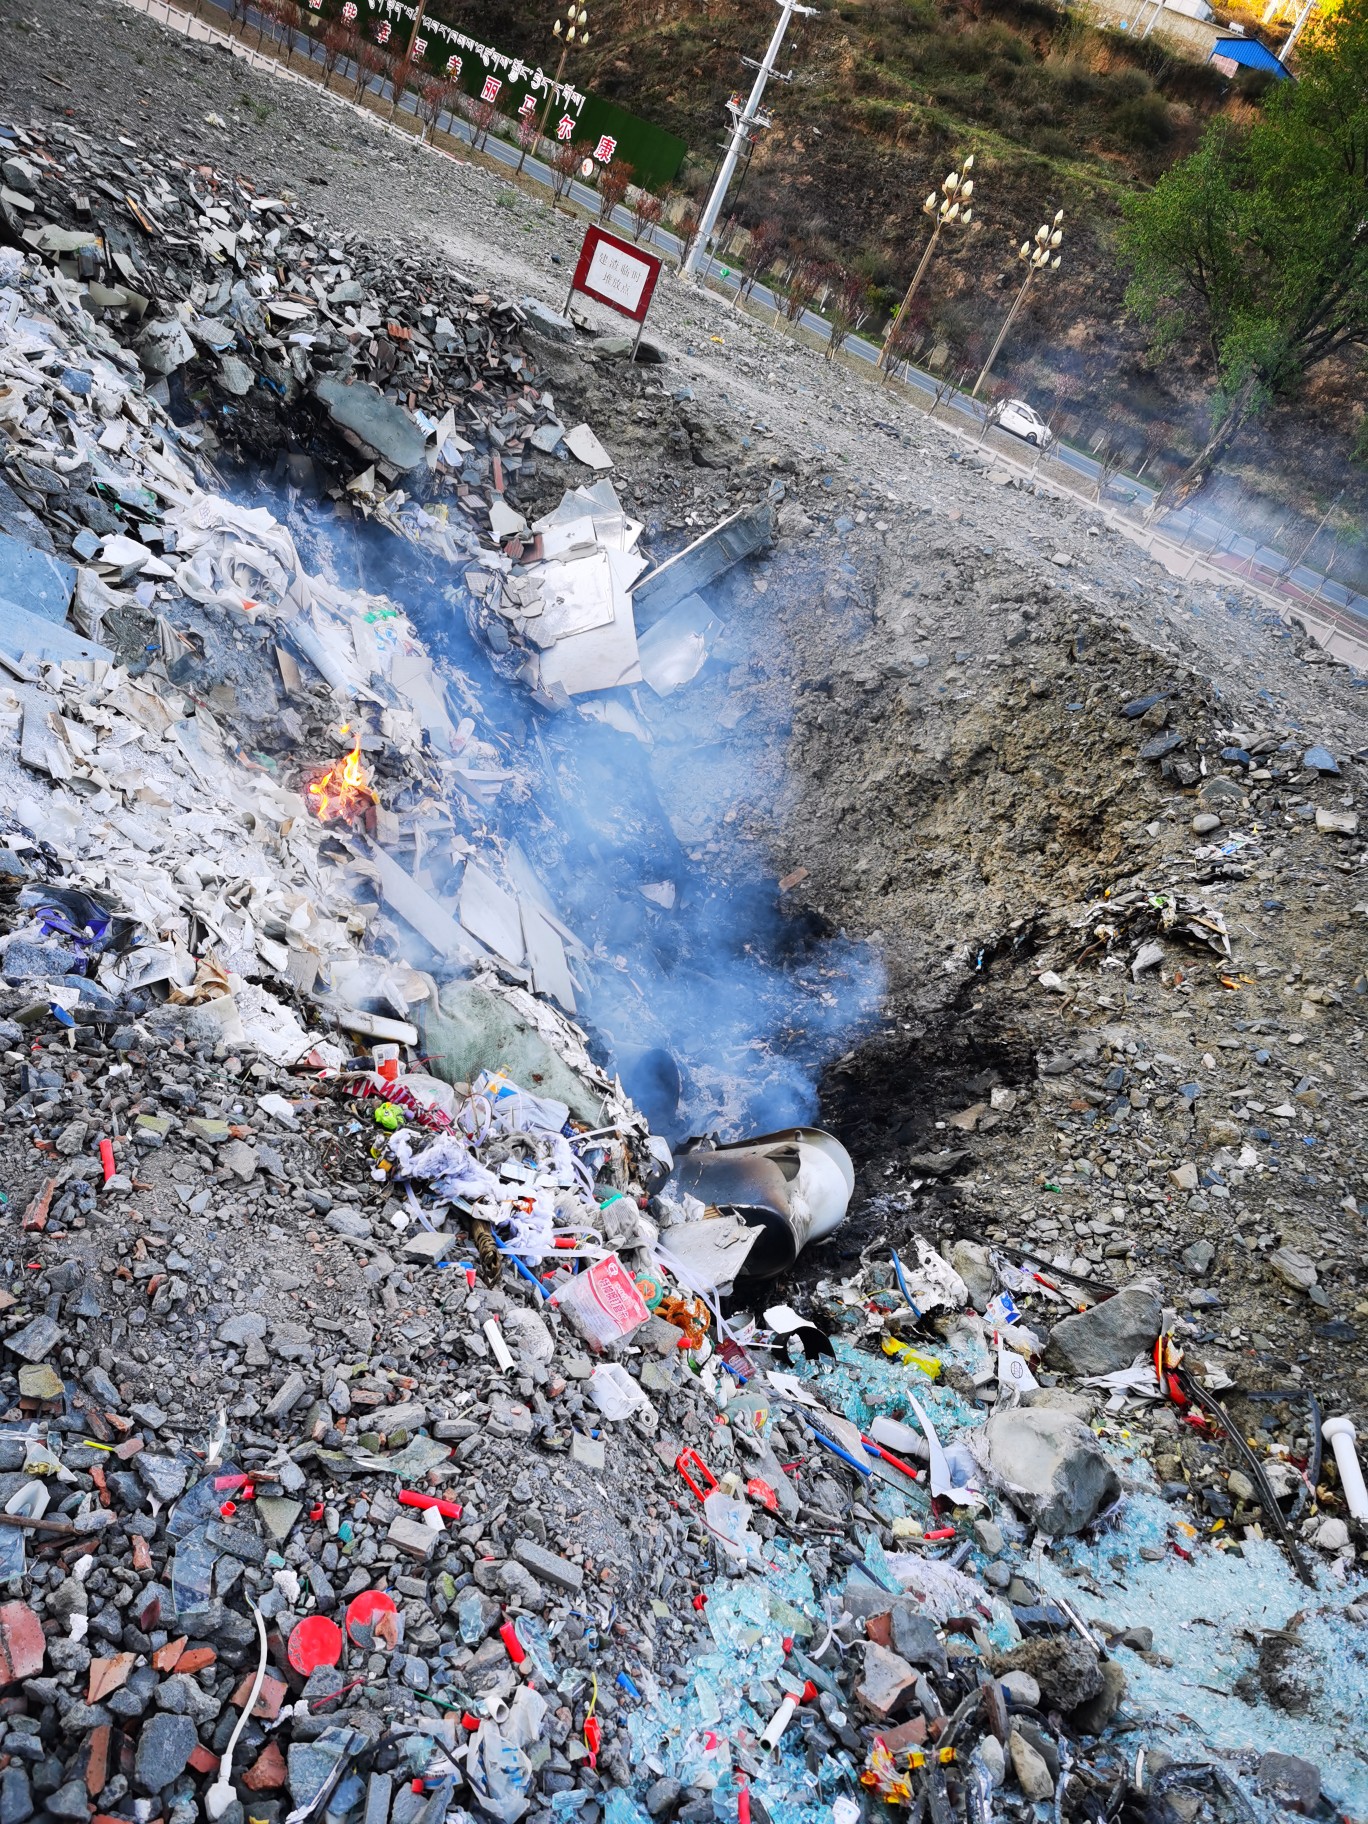 阳光新城前有一垃圾坑,有人在此焚烧垃圾,气味刺鼻,严重影响周围环境